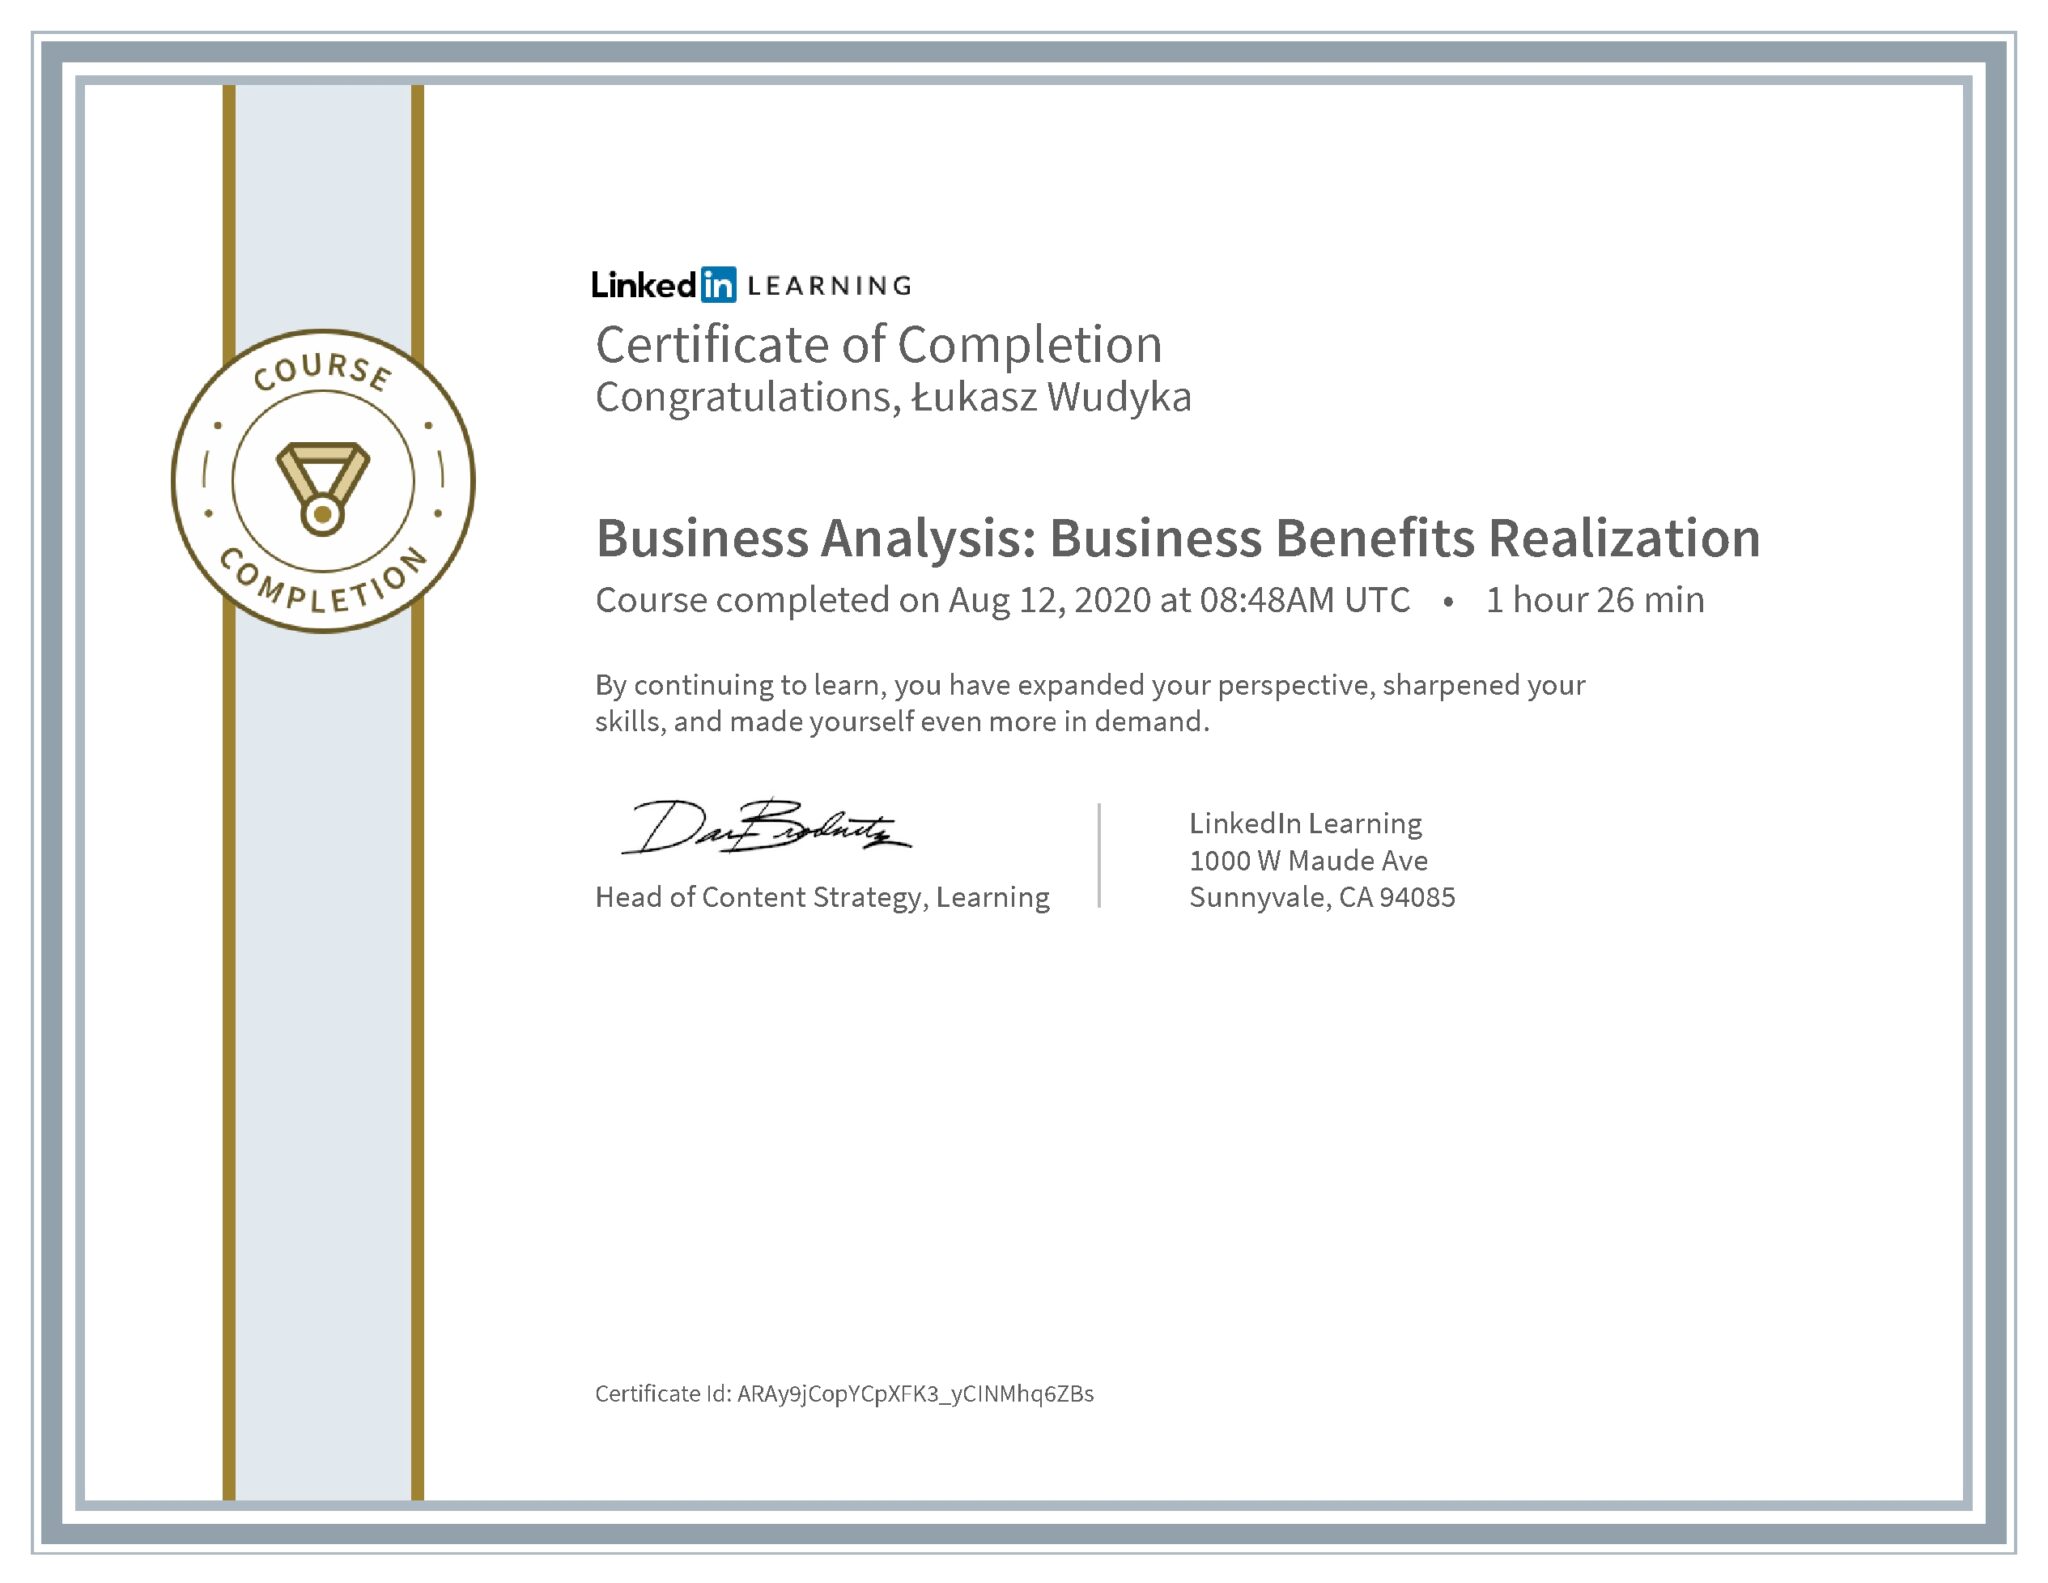 Łukasz Wudyka certyfikat LinkedIn Business Analysis: Business Benefits Realization